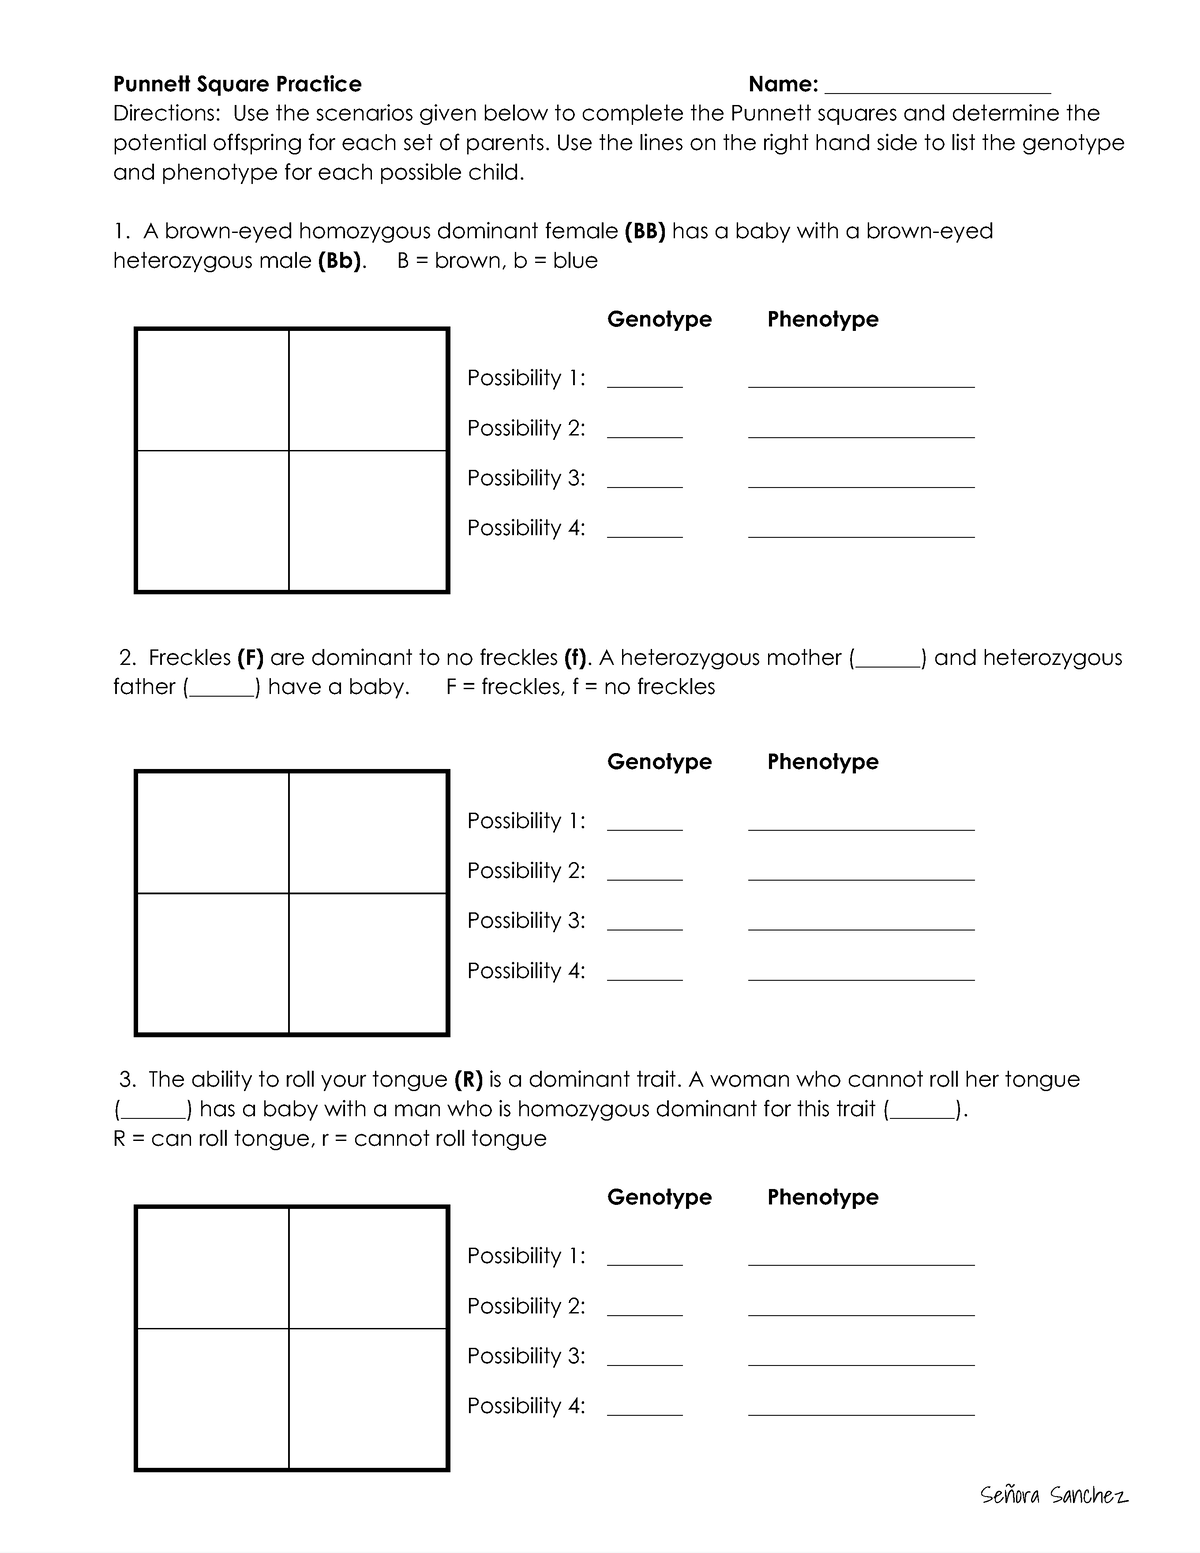 punnett-square-practice-worksheet-1-bio-115-studocu